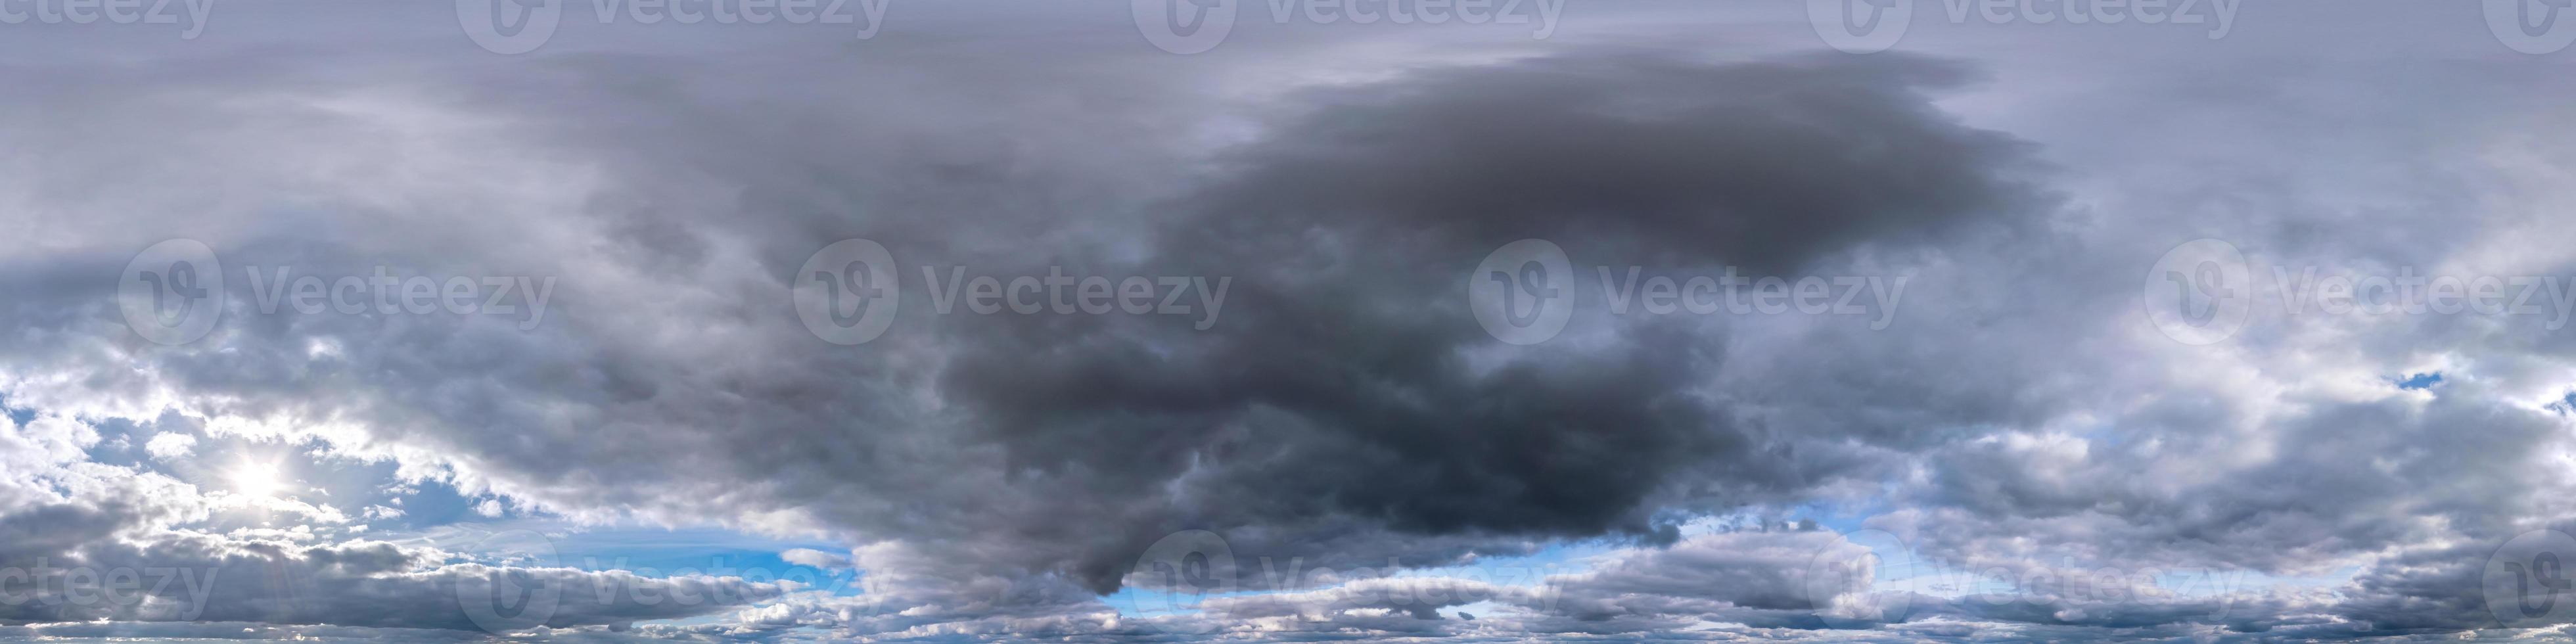 blauer himmel mit dunklen, schönen wolken vor sturm in nahtlosem hdri-panorama 360-grad-winkelansicht mit zenit zur verwendung in 3d-grafiken oder spielentwicklung als himmelskuppel oder drohnenaufnahme bearbeiten foto